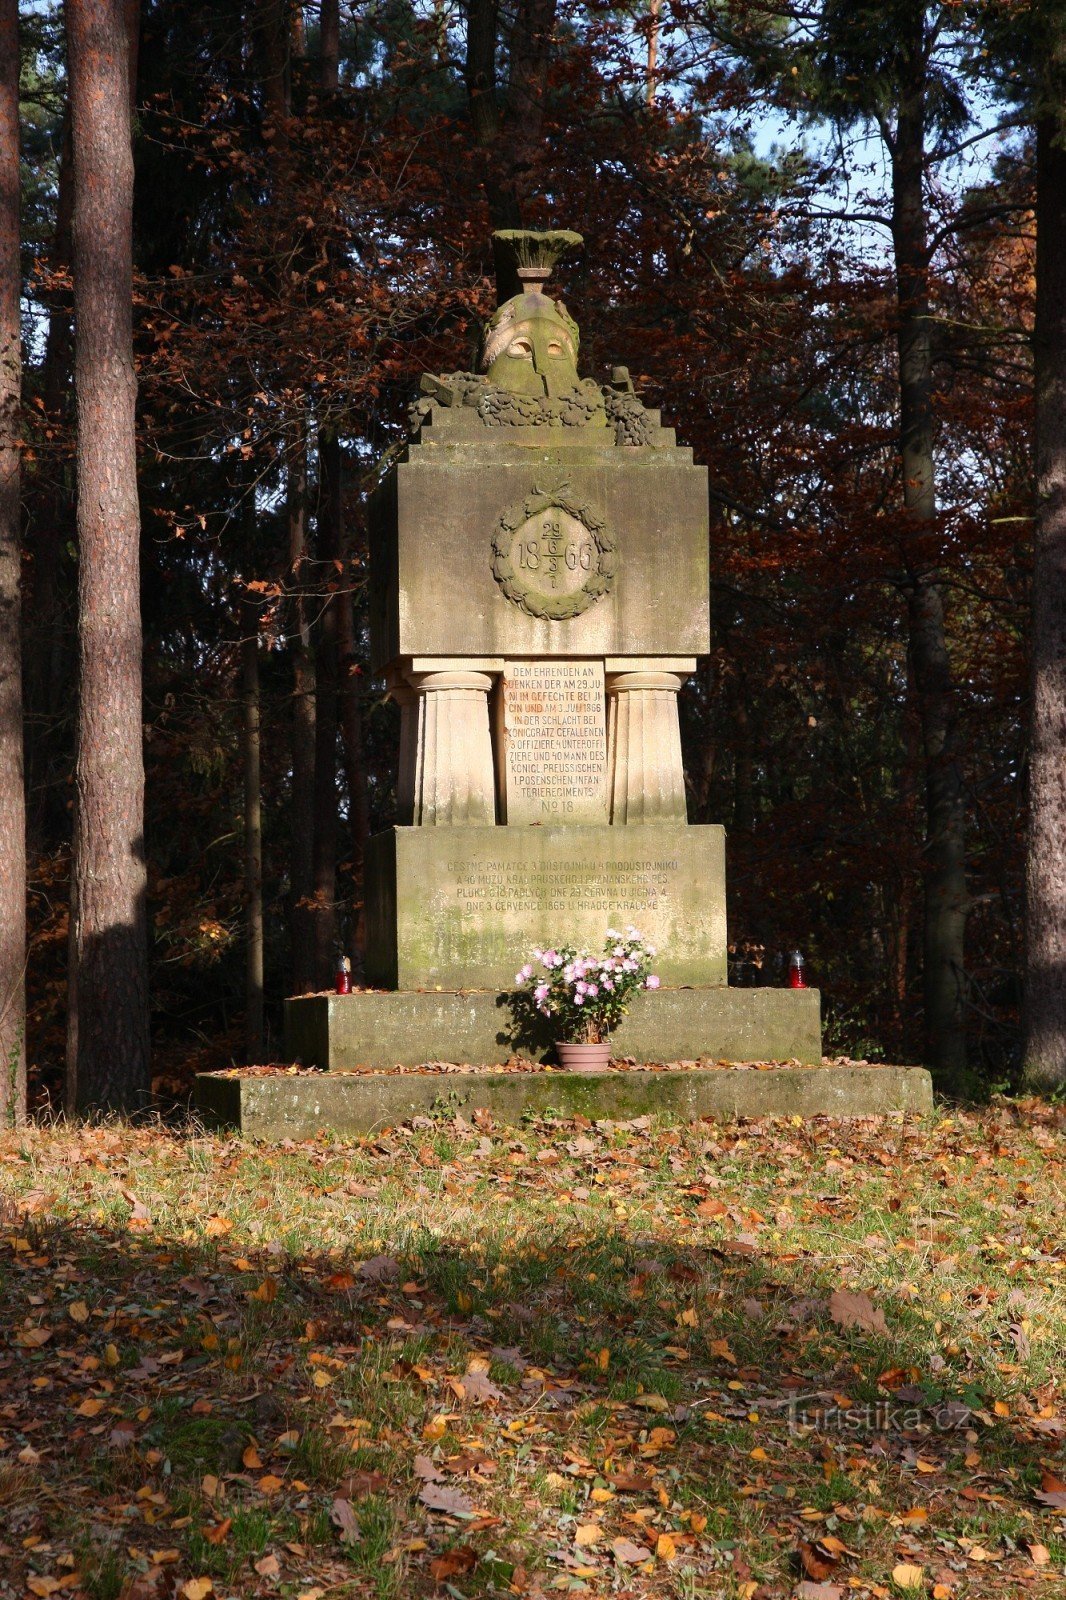 2-Memorial aos que morreram na Guerra Prussiano-Austríaca de 1866 em Prachov